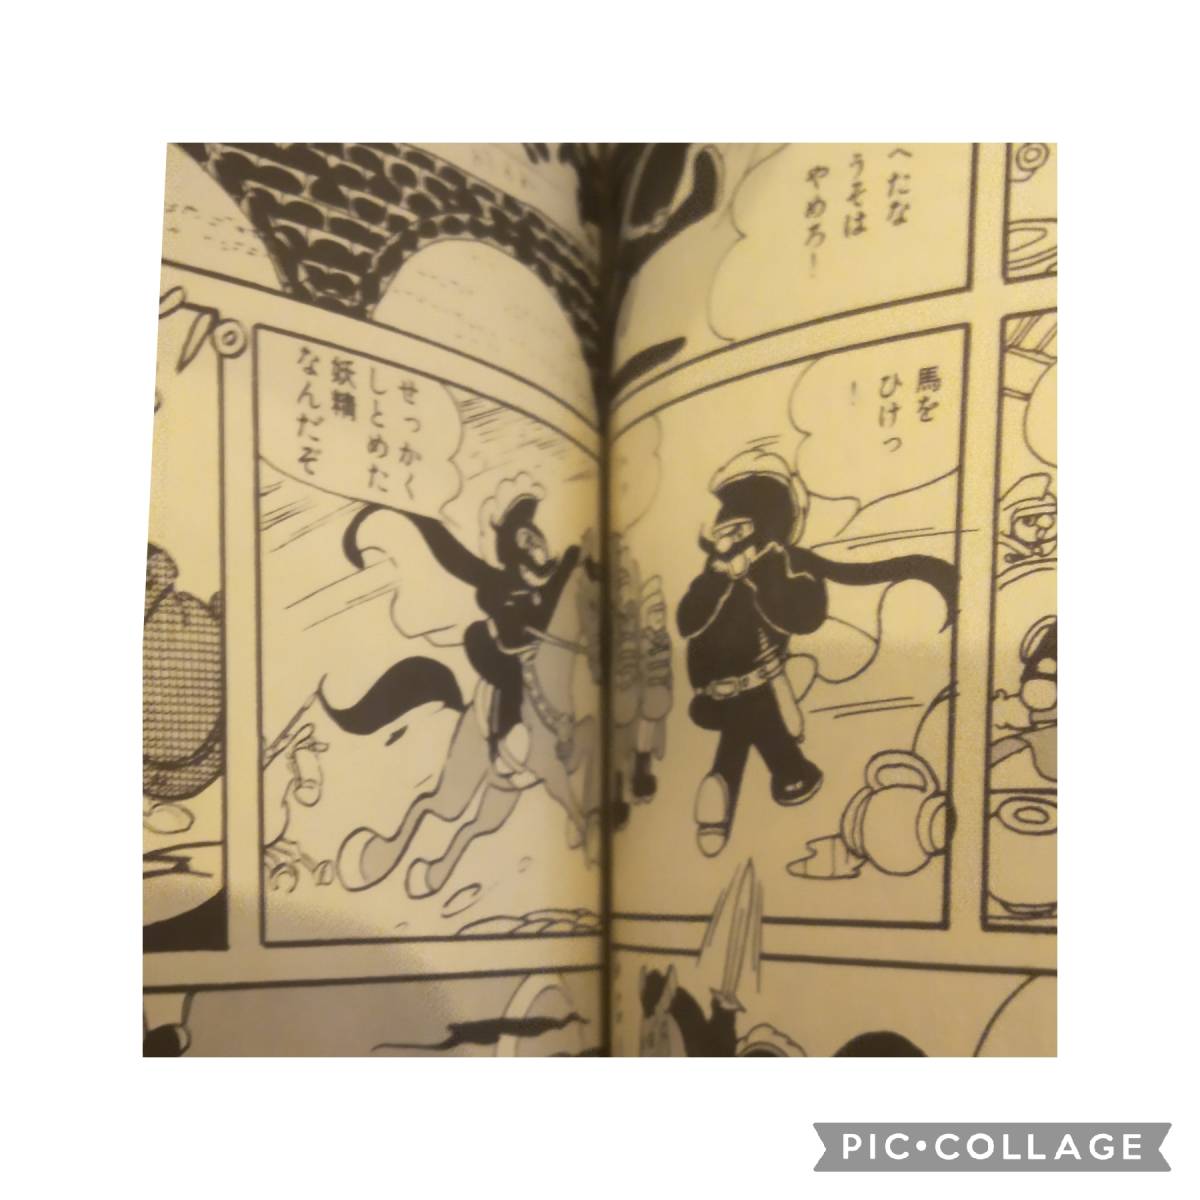 虫プロ商事 虫コミックス 松本零士 銀の谷のマリア 初版 非貸本チラシ 